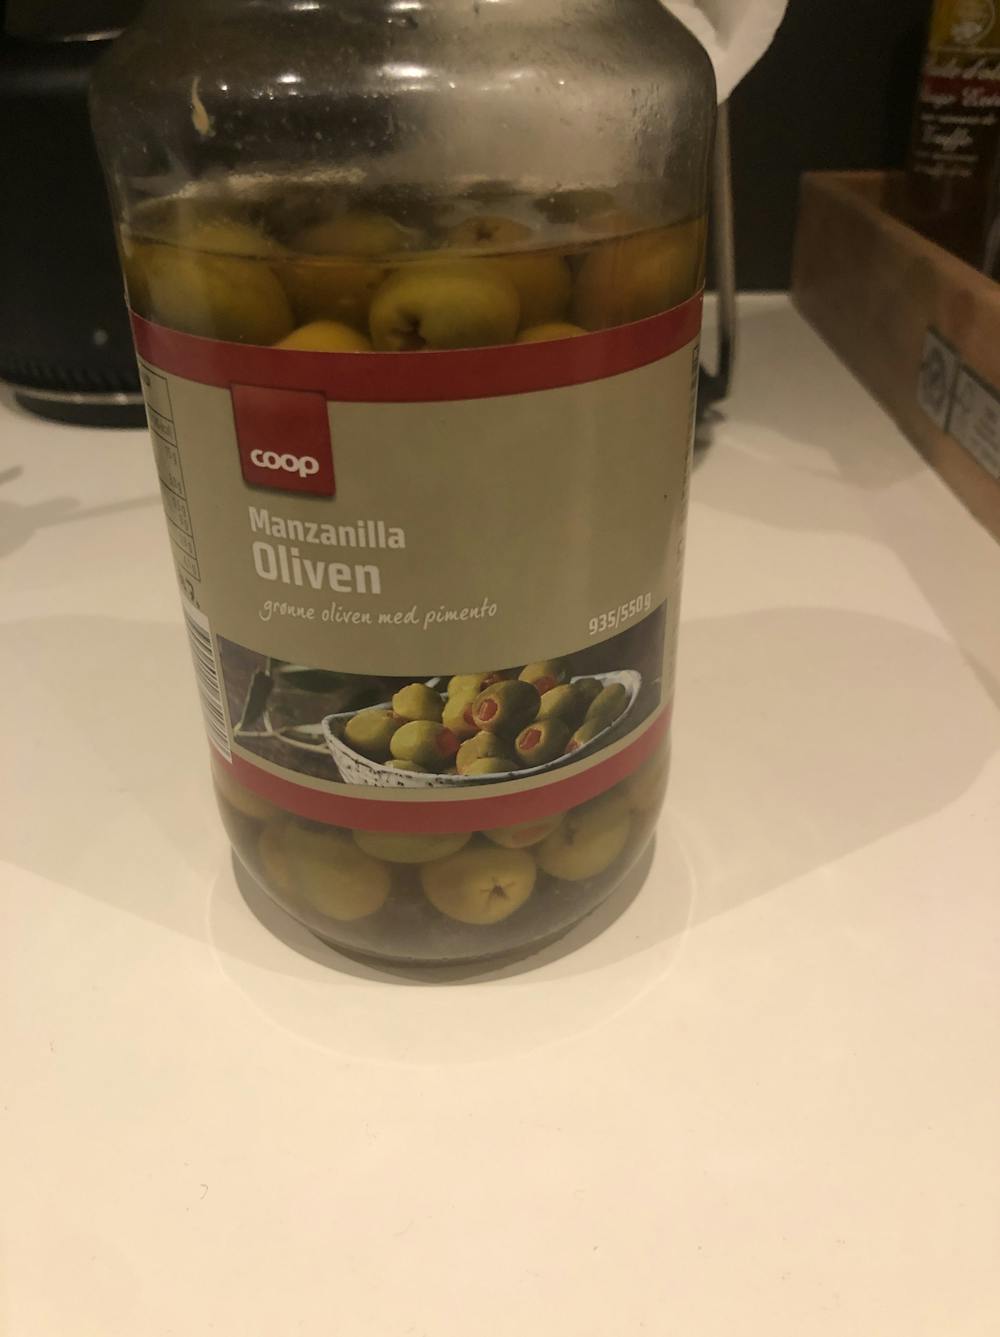 Oliven med pimento, Coop